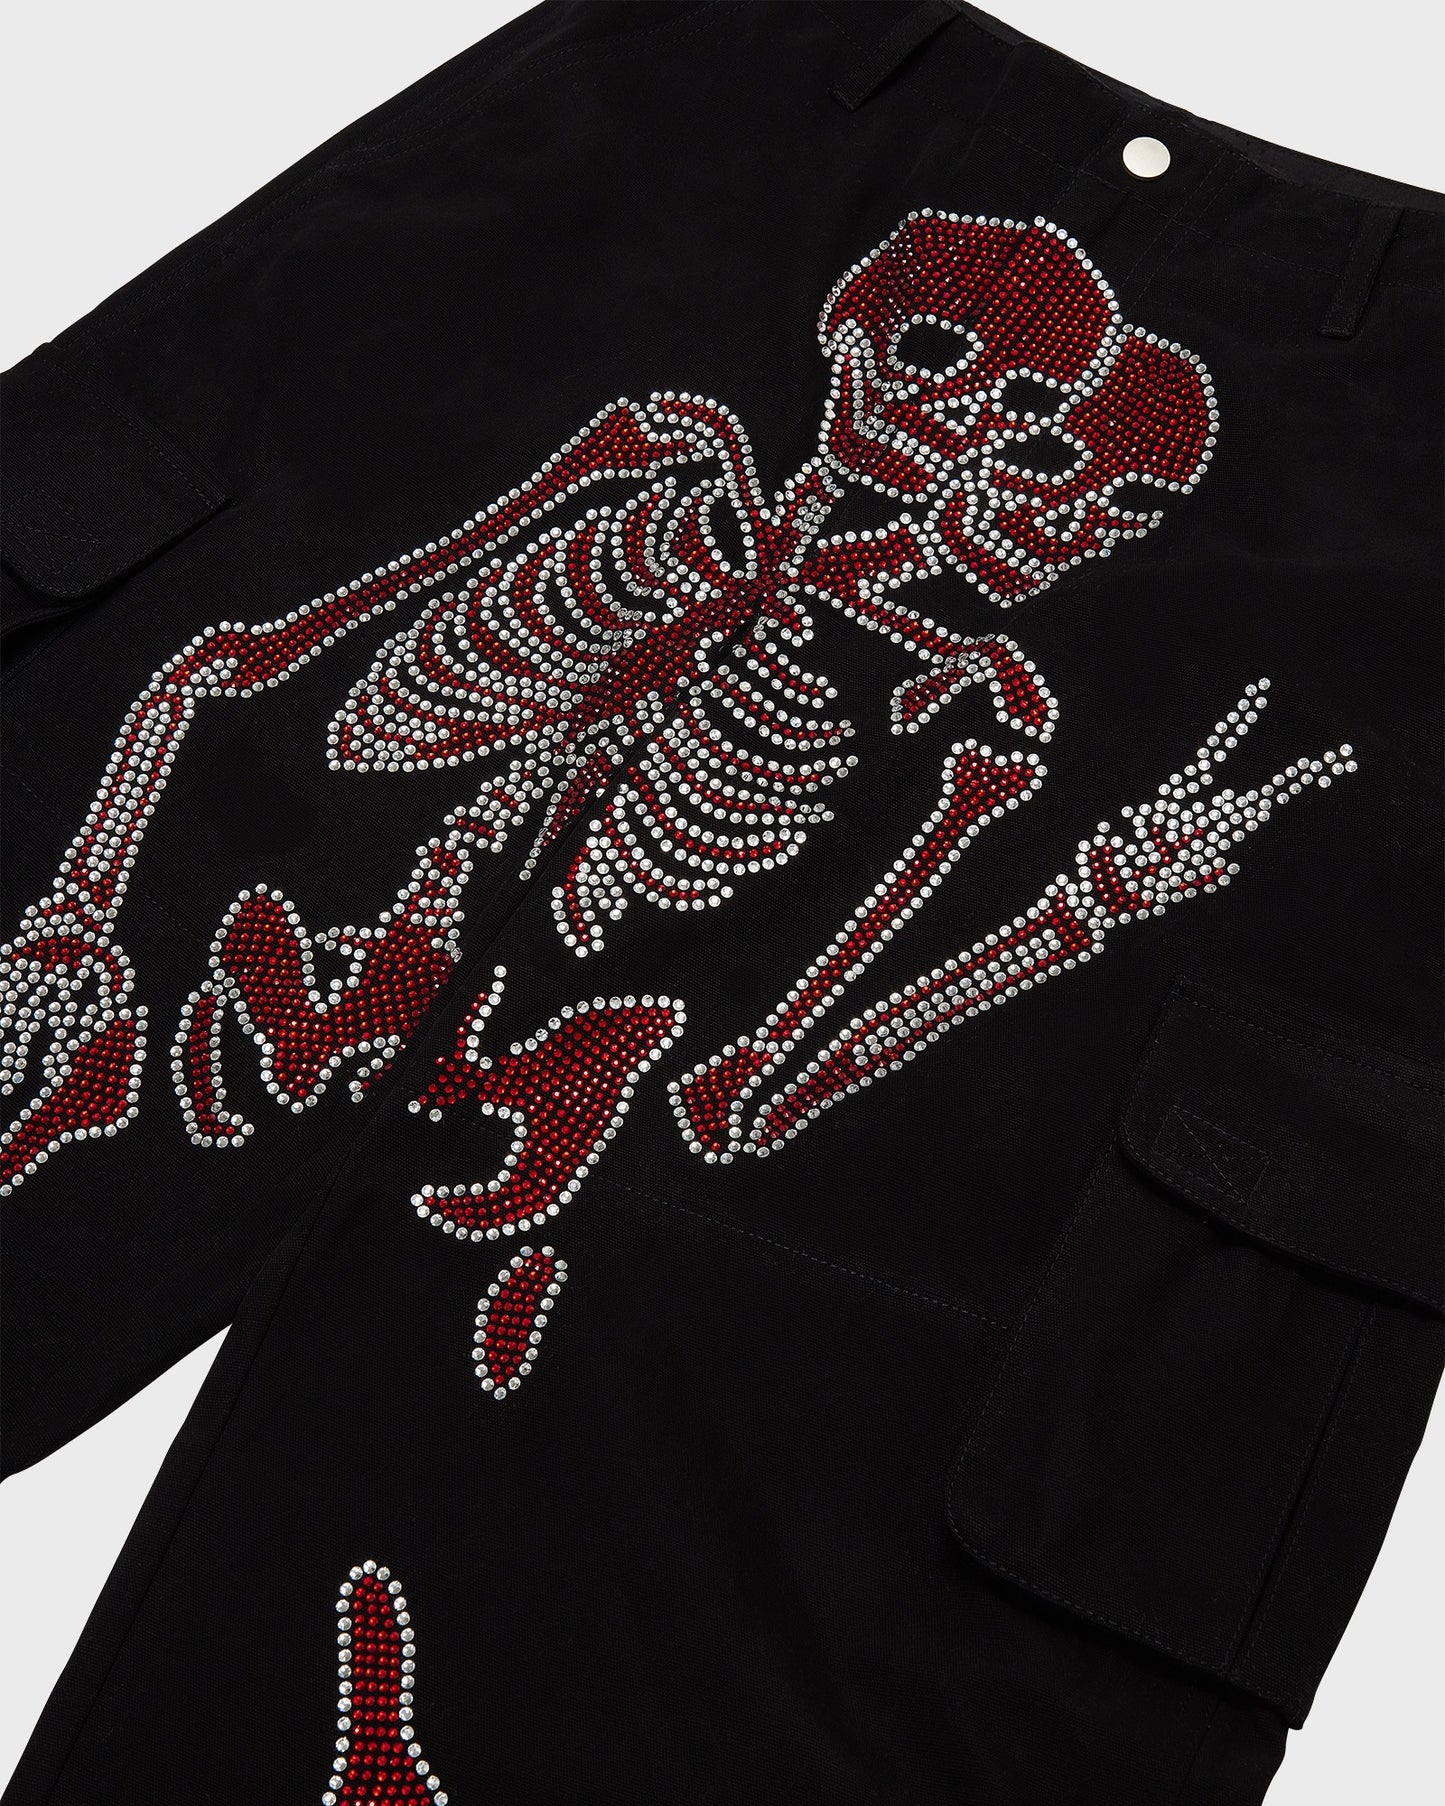 Black Skeleton Cargos (Red Rhinestone Logo)